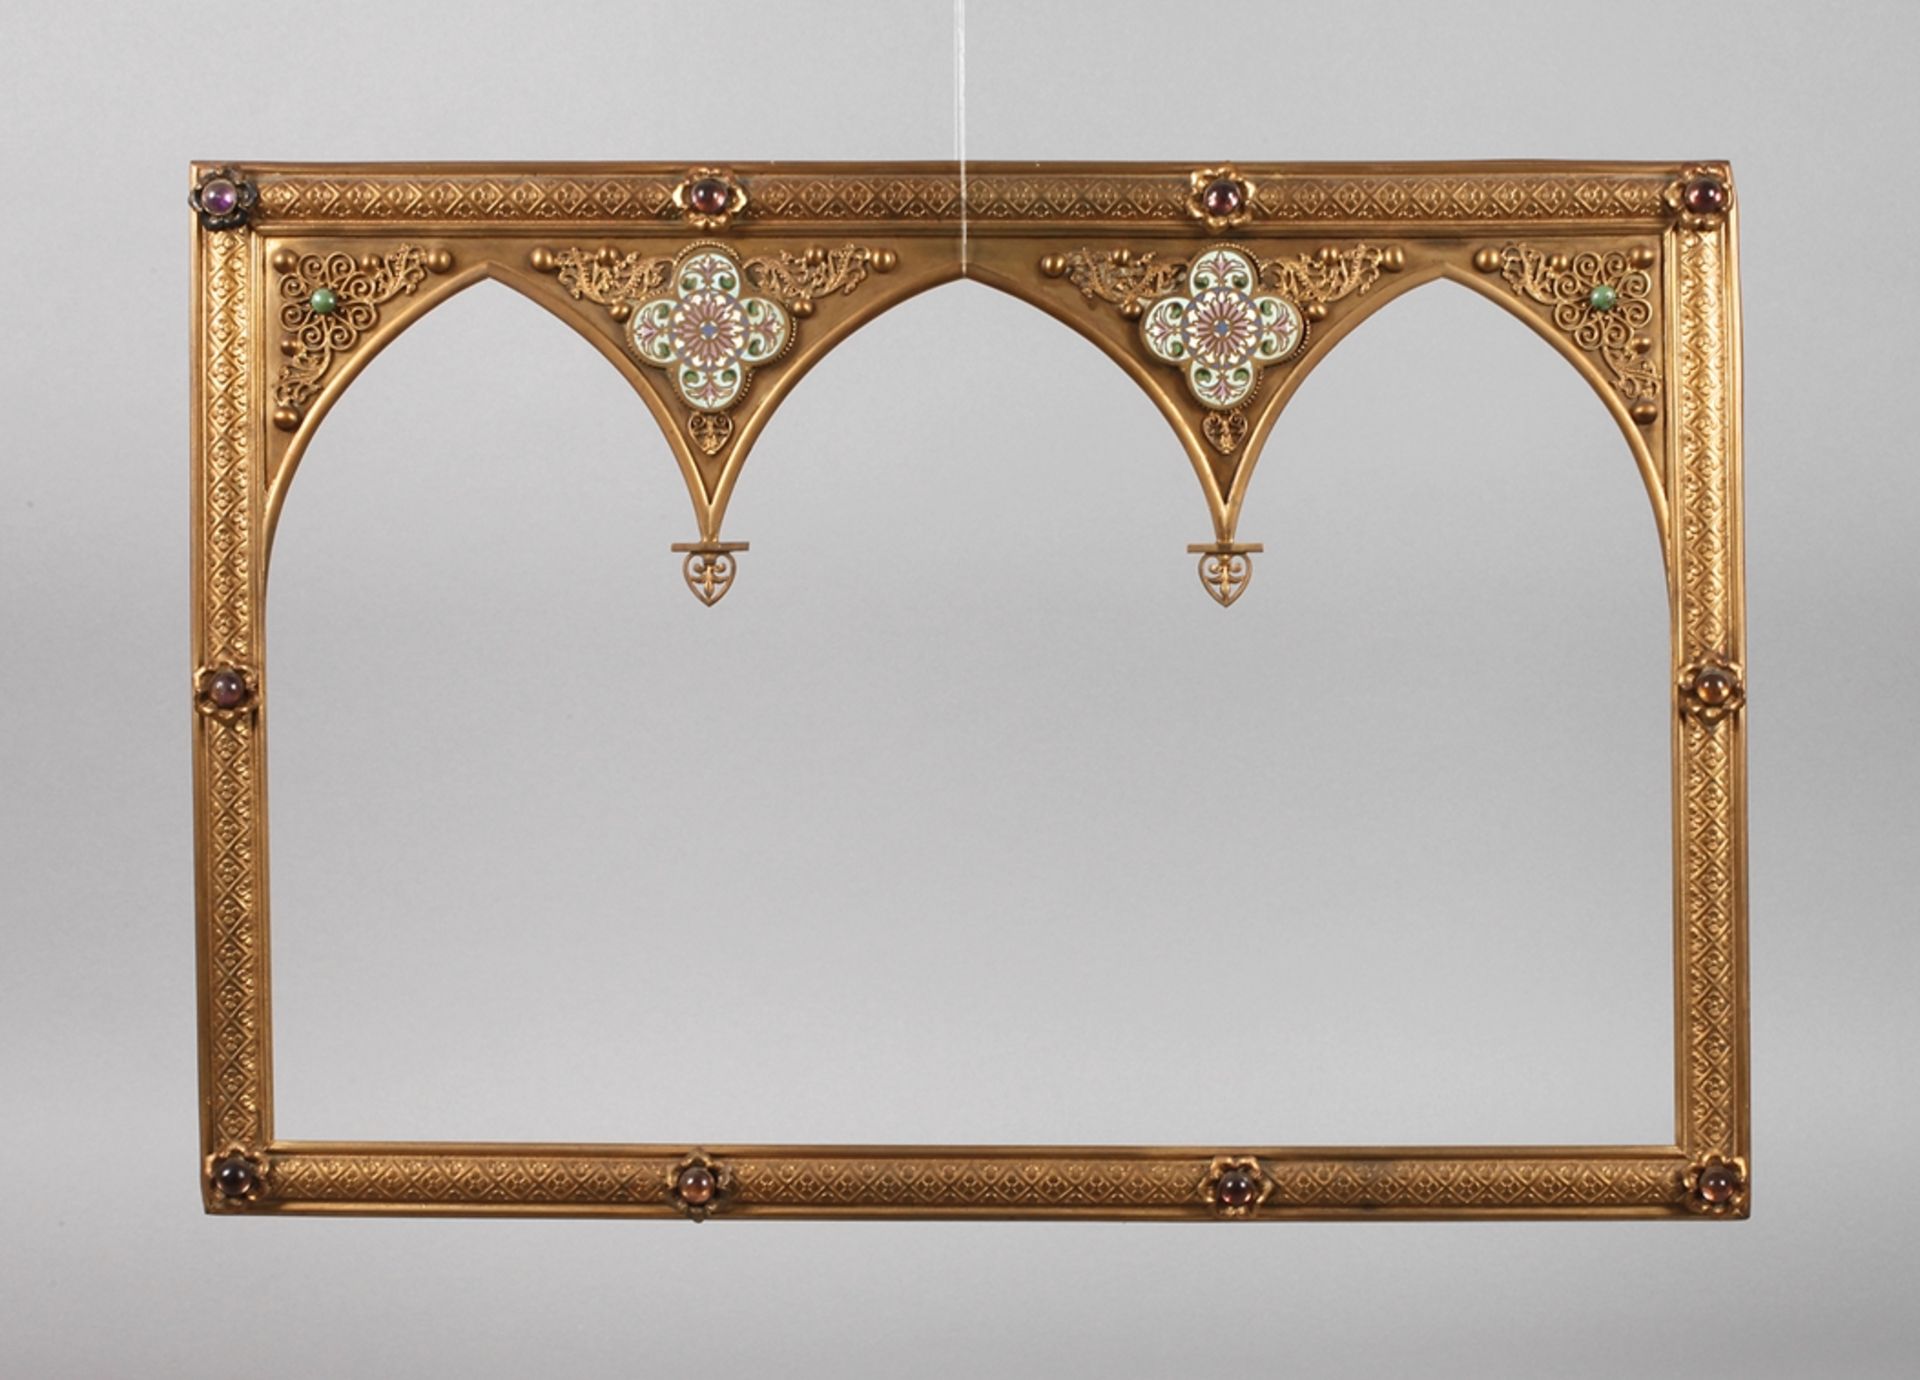 Neogotischer Rahmenum 1880, Messing vergoldet, im oberen Bereich drei Spitzbögen, emailverzierte